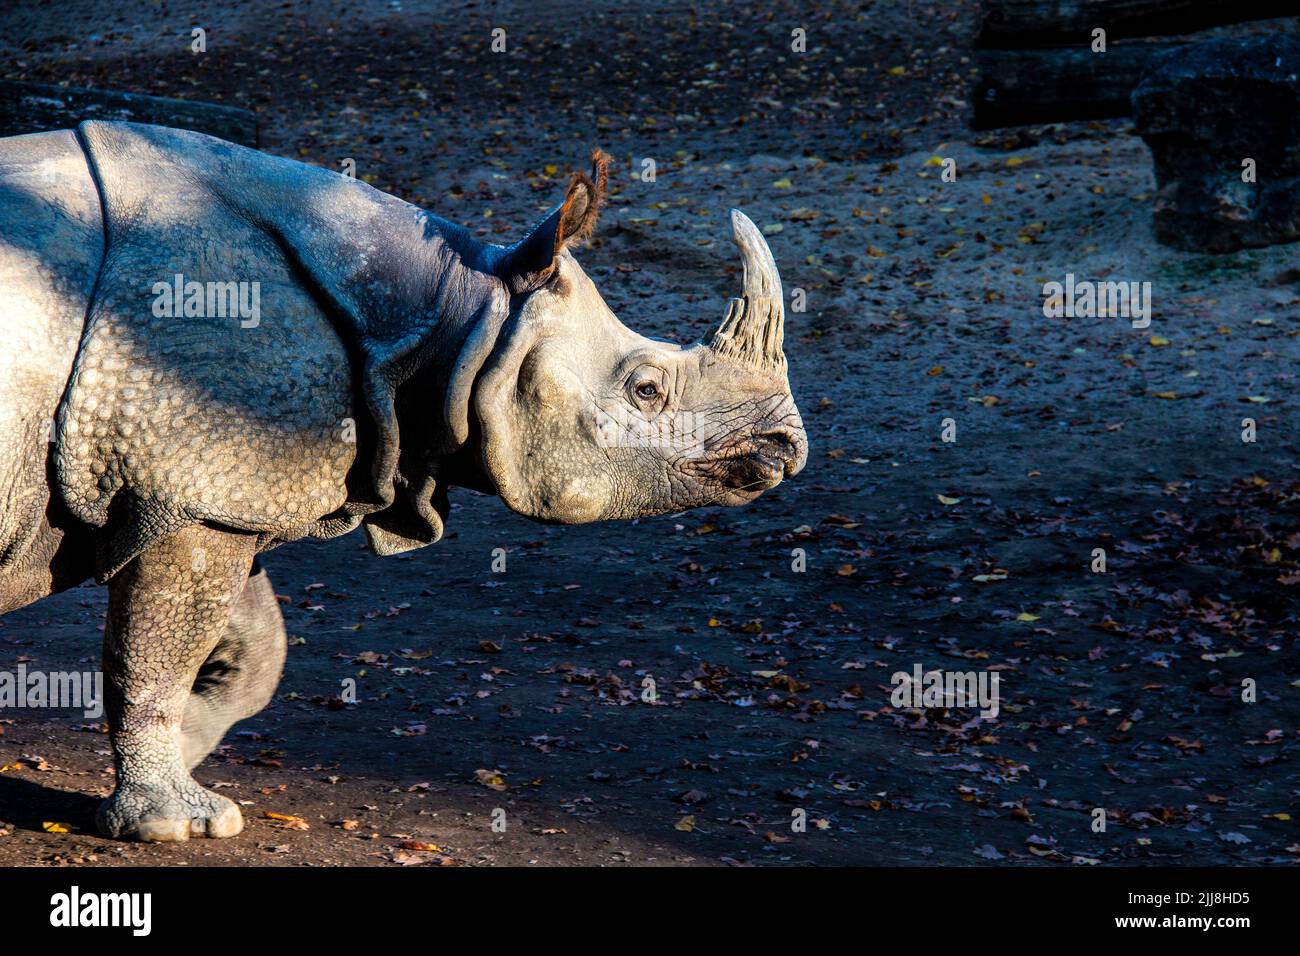 Rhinocéros de Greatndian (Rhinoceros unicornis) un-corned rhinocéros animal indigène au sous-continent indien Banque D'Images